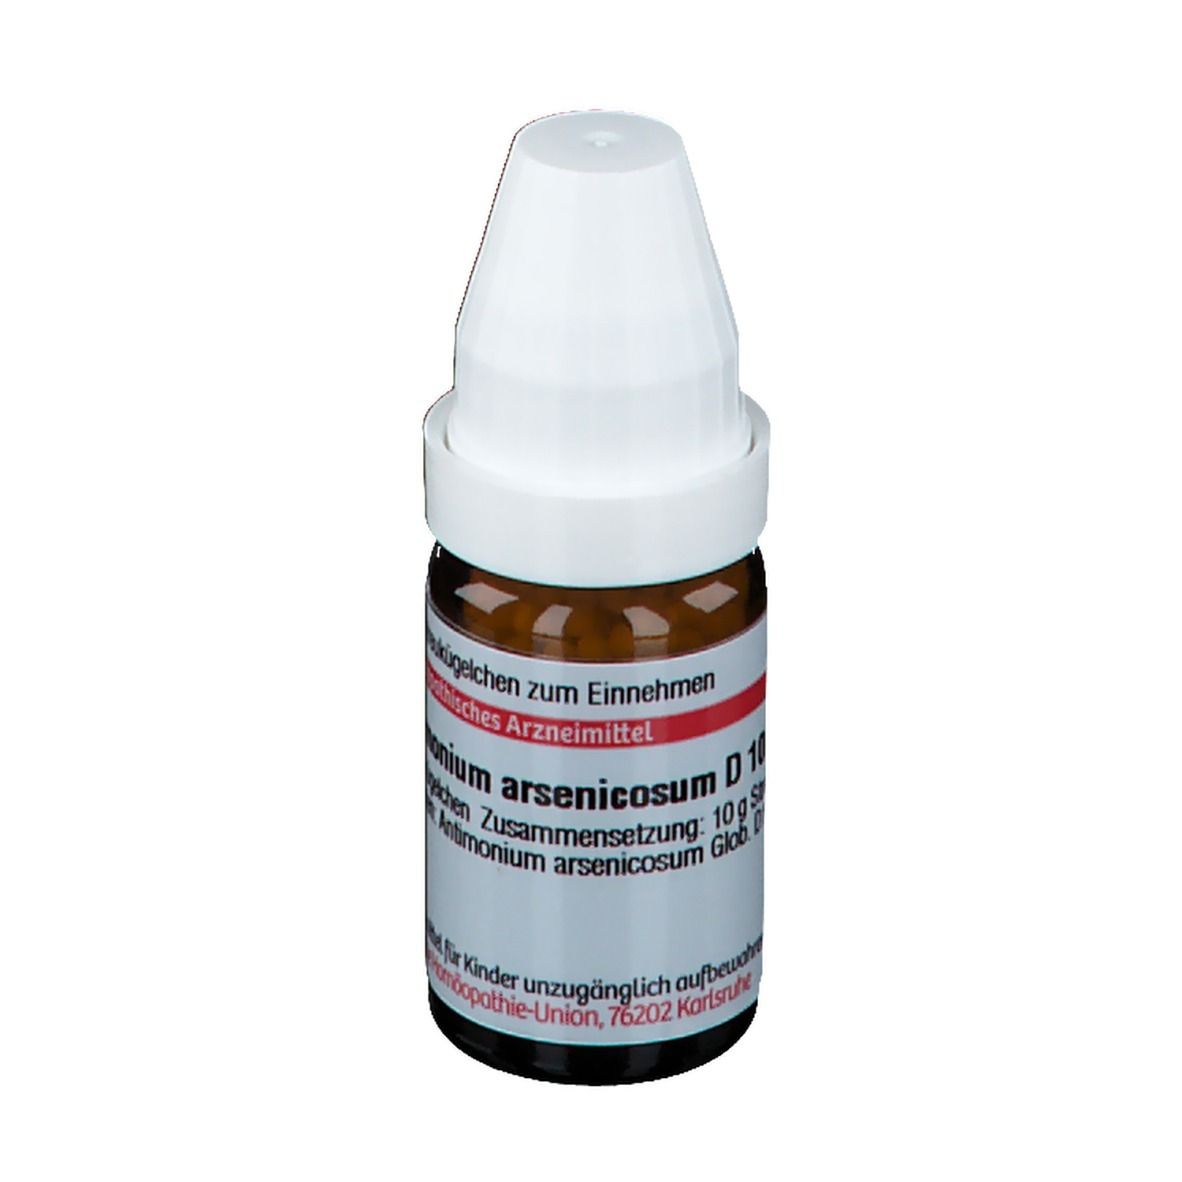 DHU Antimonium Arsenicosum D10